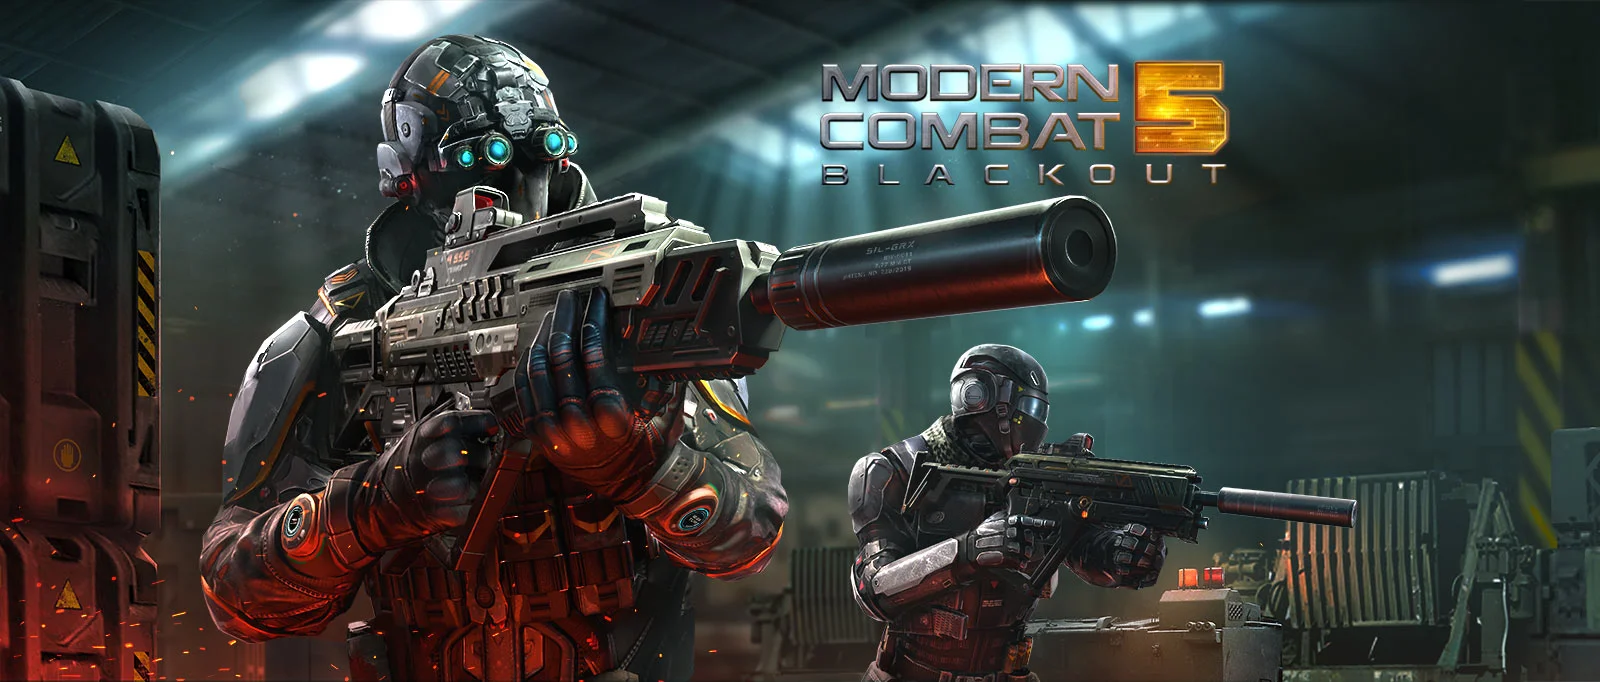 Modern Combat 5 Logo: Best shooter games